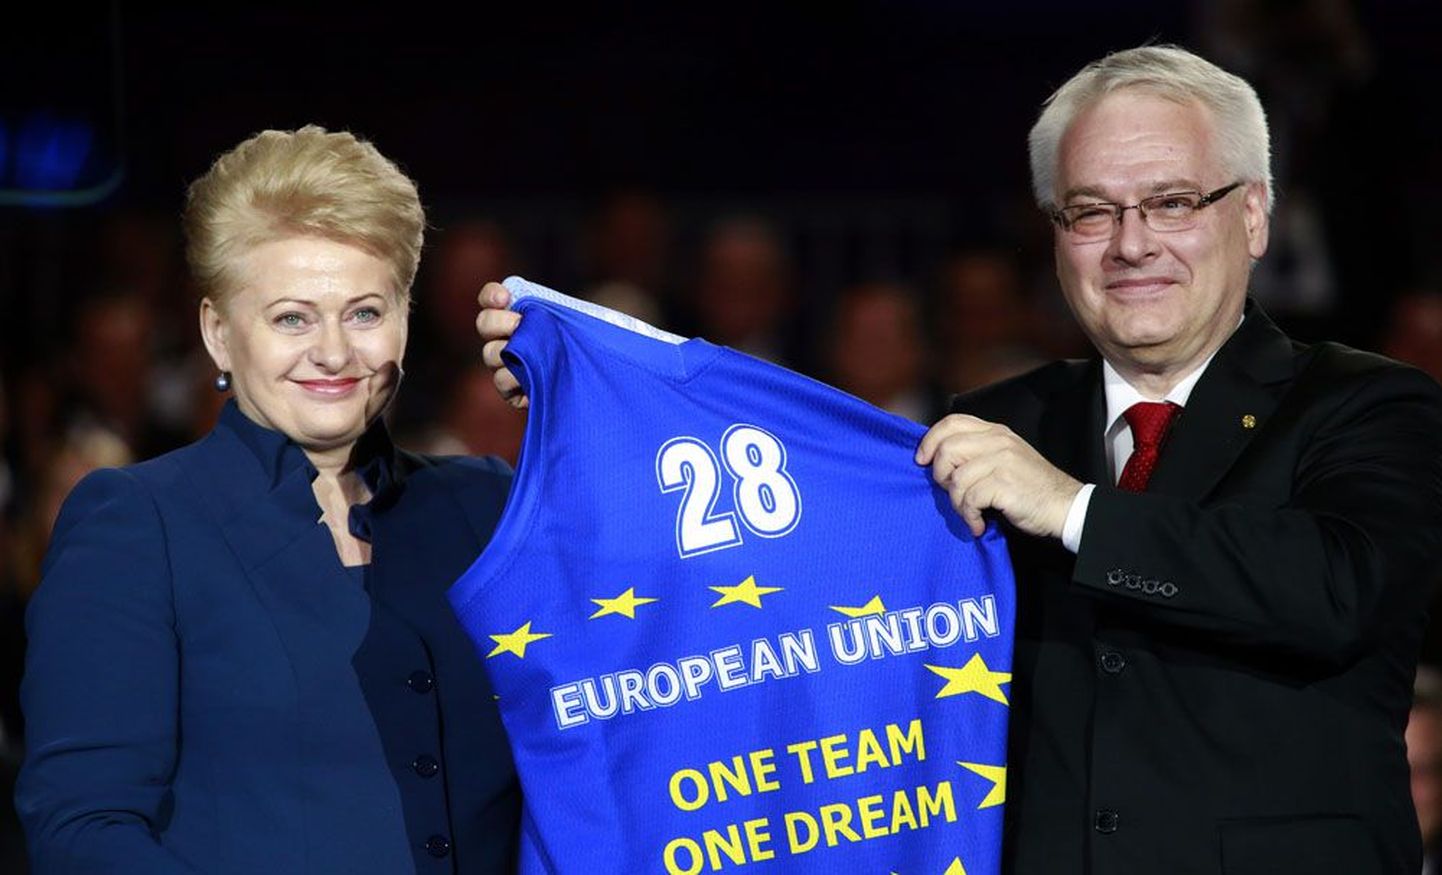 Президент Хорватии Иво Йосипович получил в честь торжества от президента Литвы Дали Грибаускайте баскетбольную майку с надписью «Одна команда. Одна мечта».